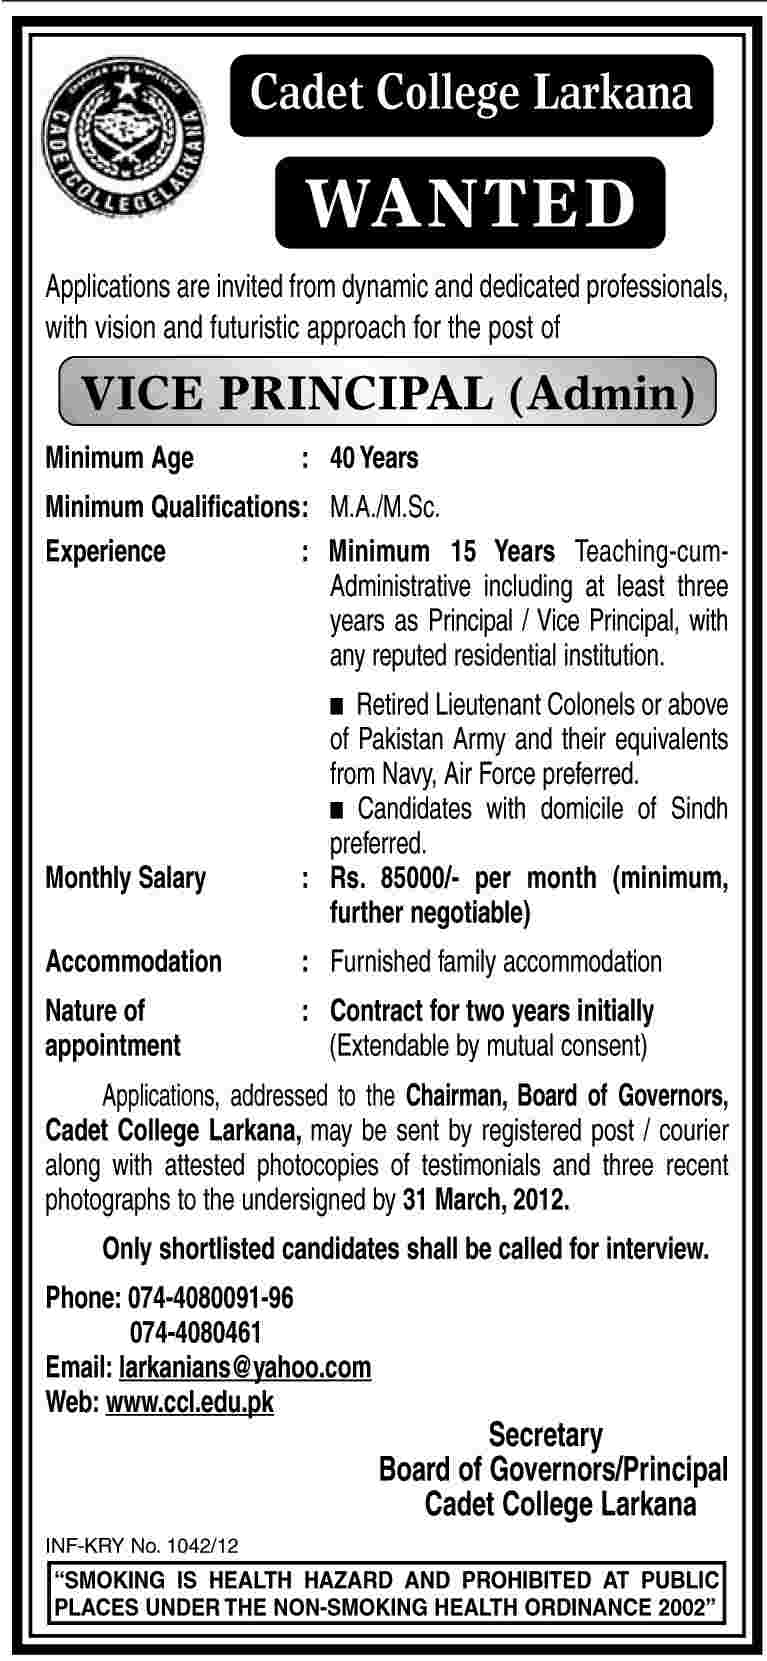 Cadet College Larkana (Govt Jobs) Requires Vice Principal (Admin)